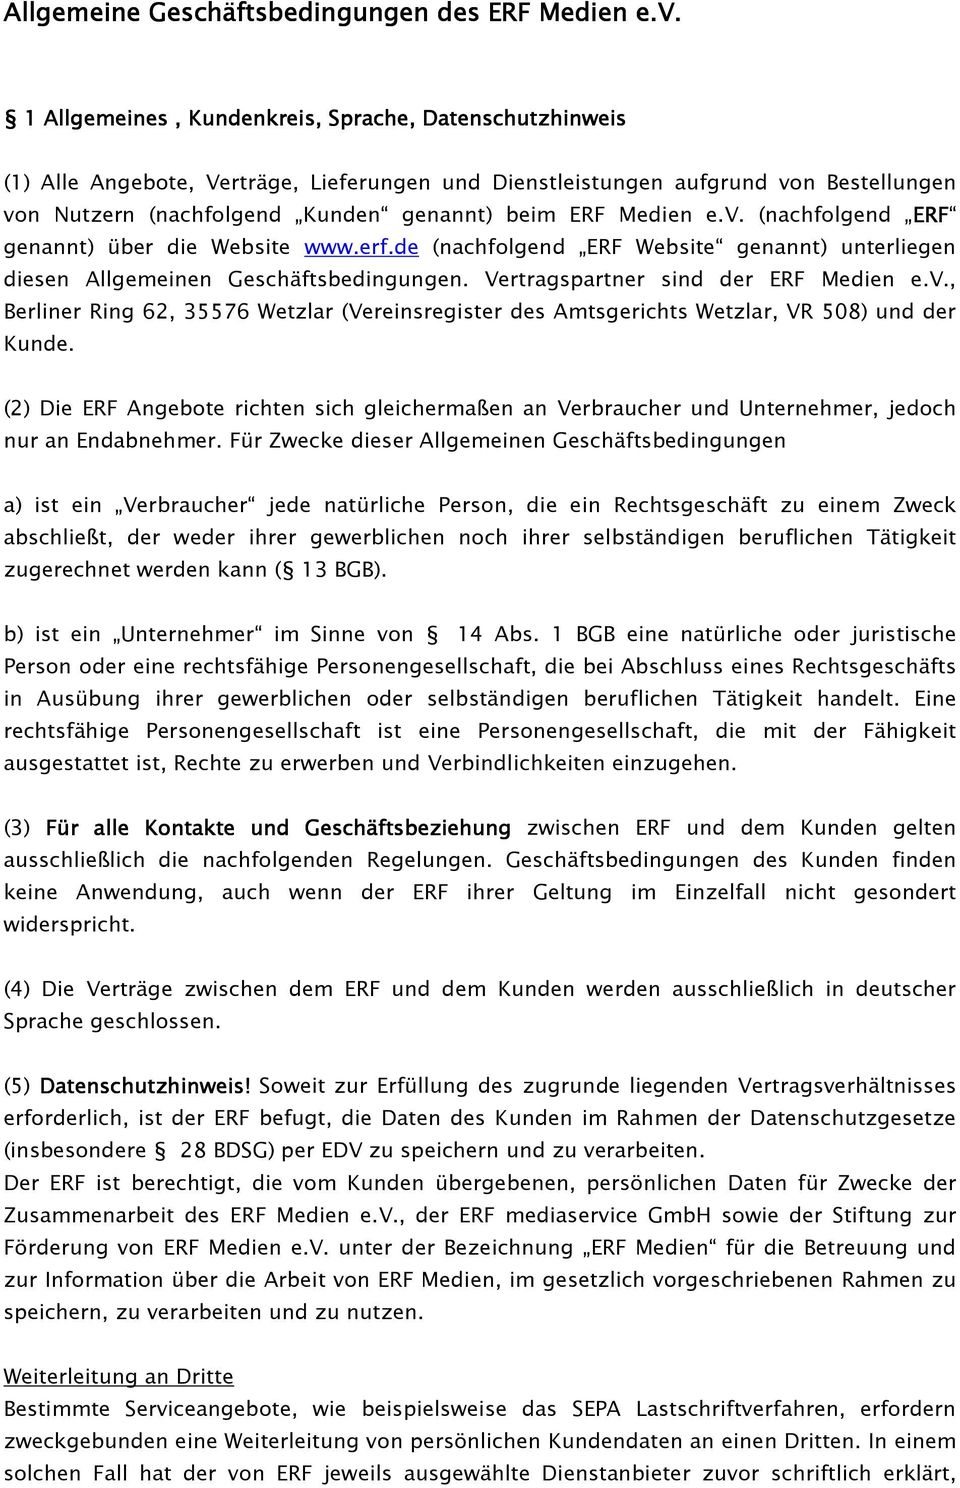 Medien e.v. (nachfolgend ERF ERF genannt) über die Website www.erf.de (nachfolgend ERF Website genannt) unterliegen diesen Allgemeinen Geschäftsbedingungen. Vertragspartner sind der ERF Medien e.v., Berliner Ring 62, 35576 Wetzlar (Vereinsregister des Amtsgerichts Wetzlar, VR 508) und der Kunde.